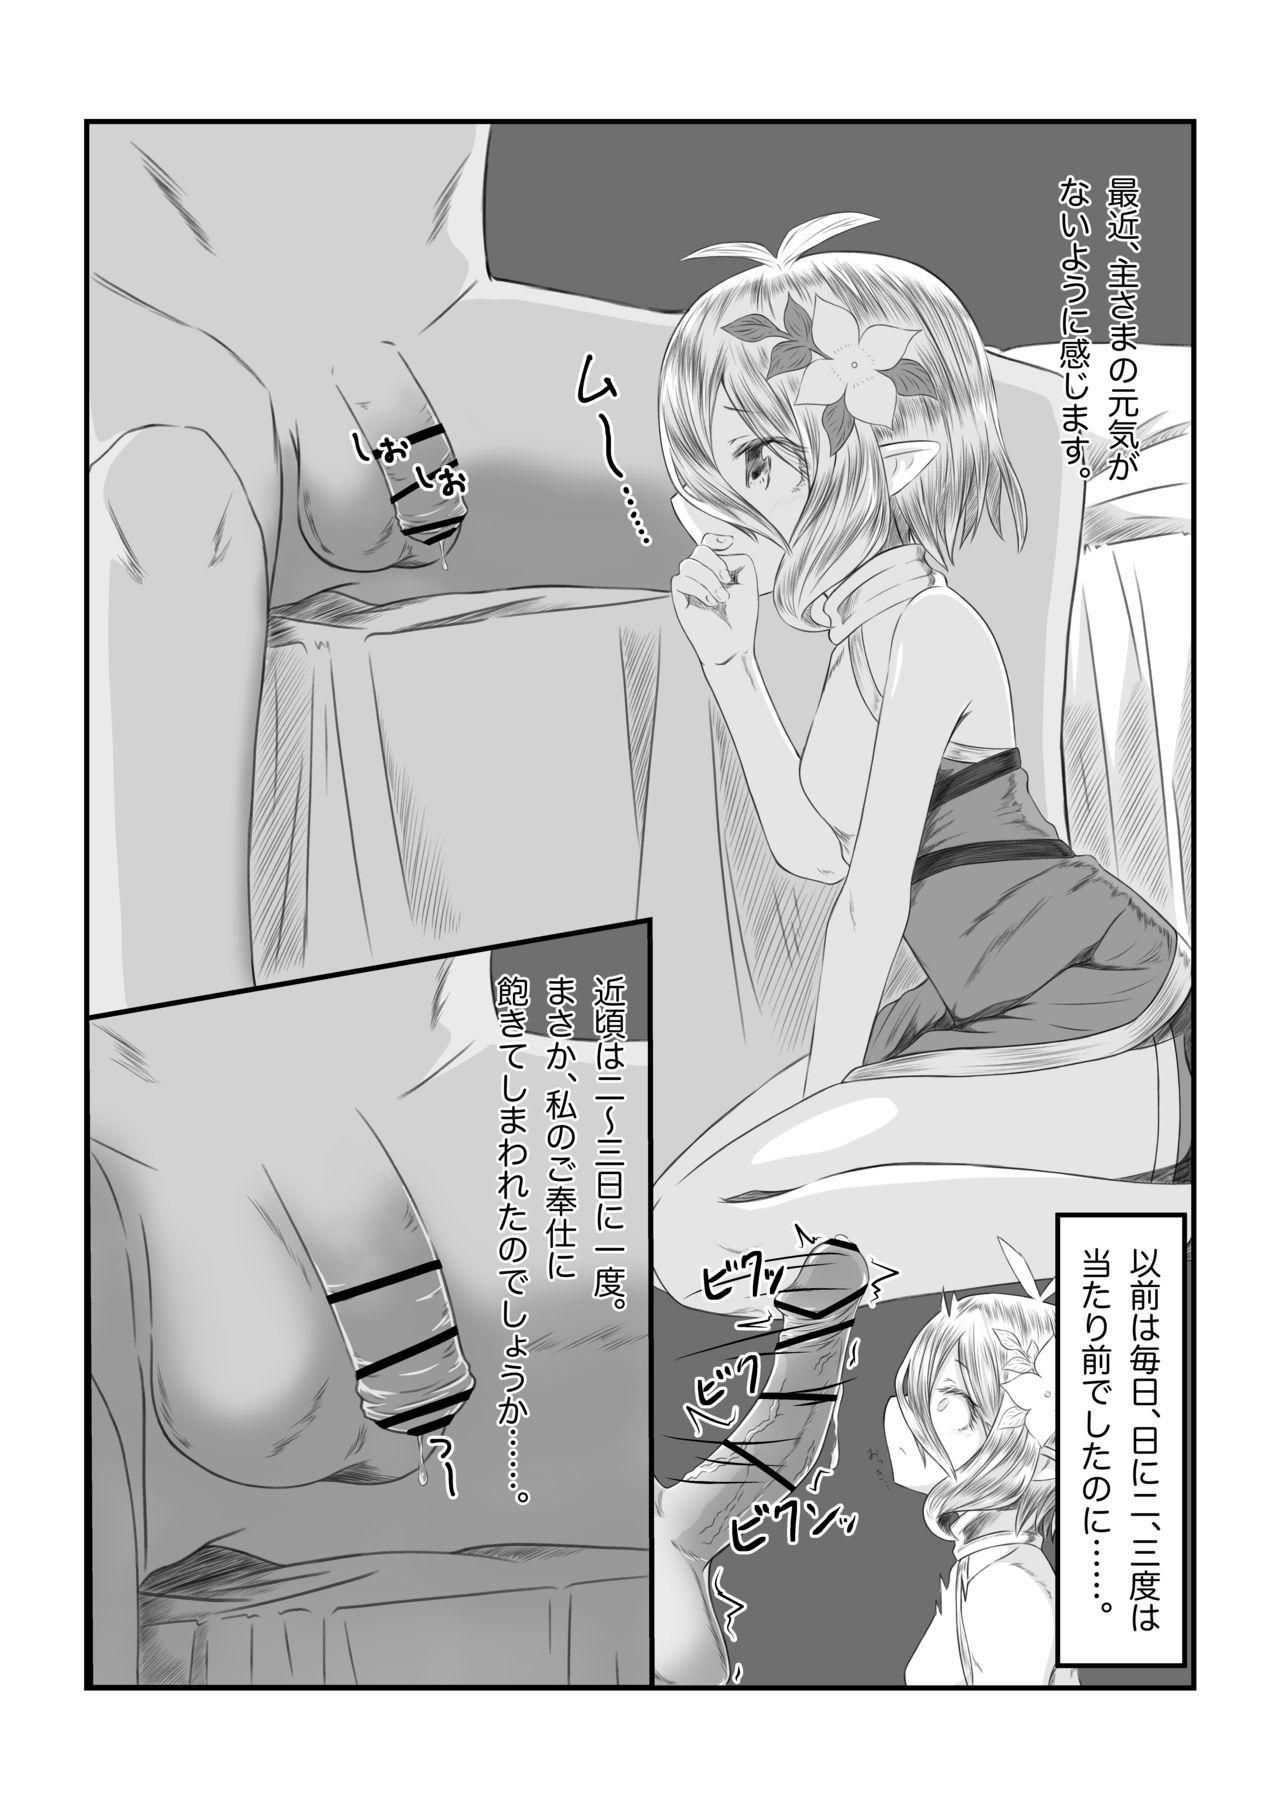 Caseiro Sore wa amesu-sama ni kinshi sa rete imasu - Princess connect Doggy Style Porn - Page 3